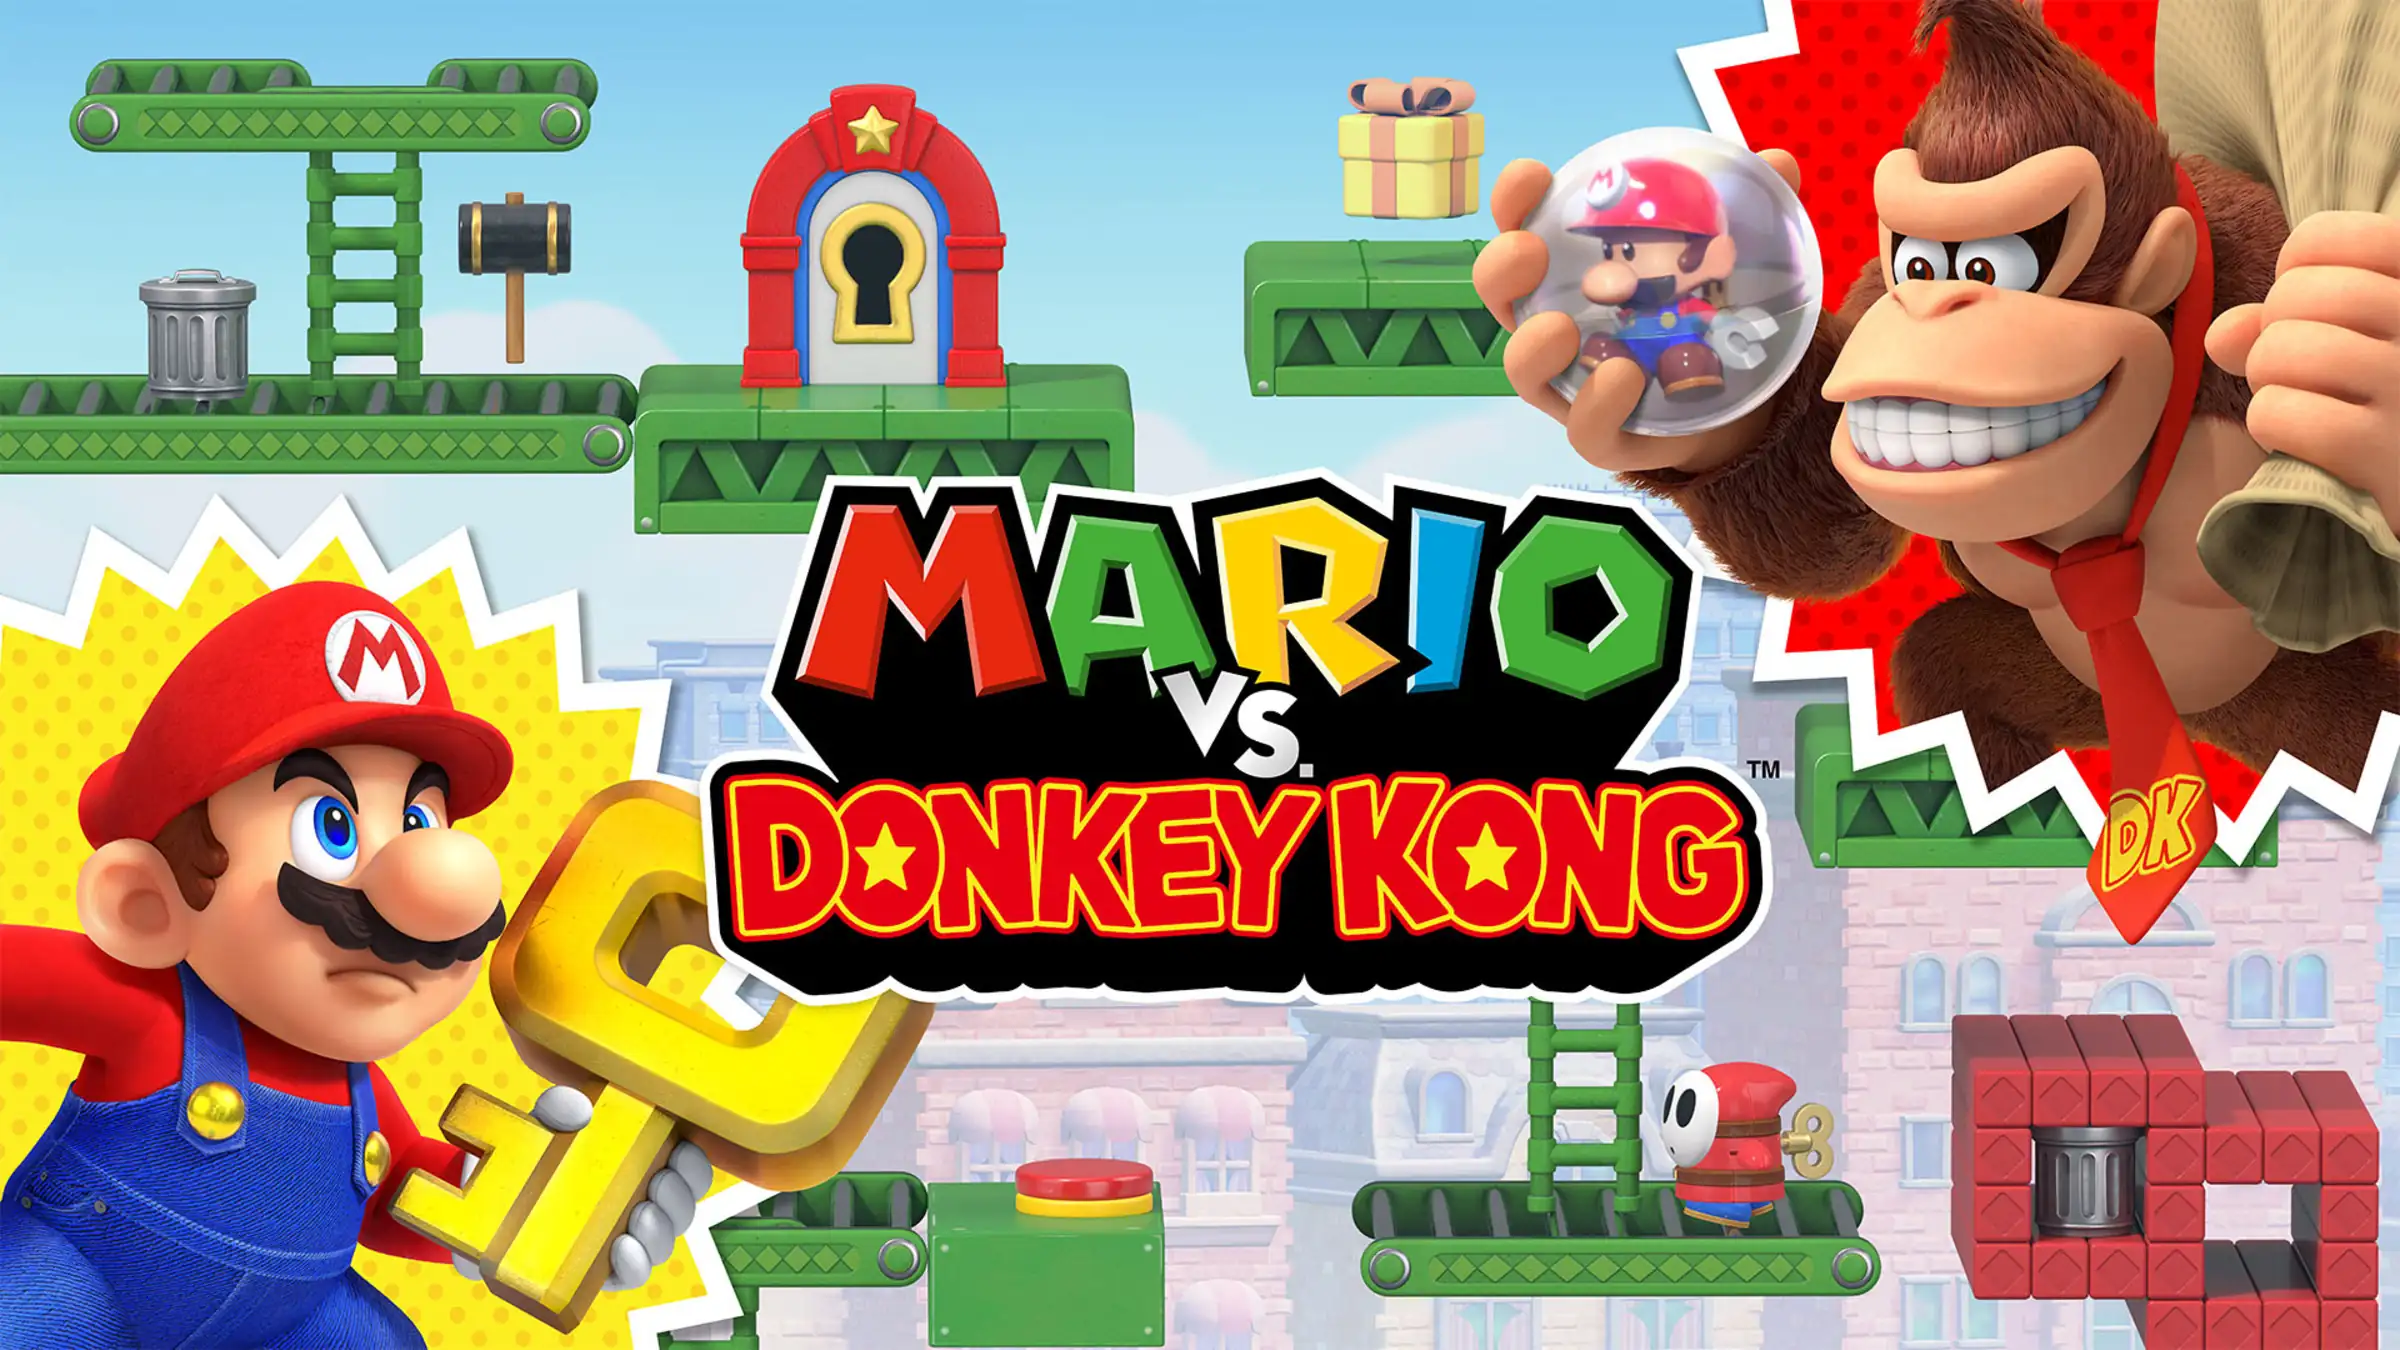 Mario vs Donkey Kong RECENSIONE | A Kong piace Minimario